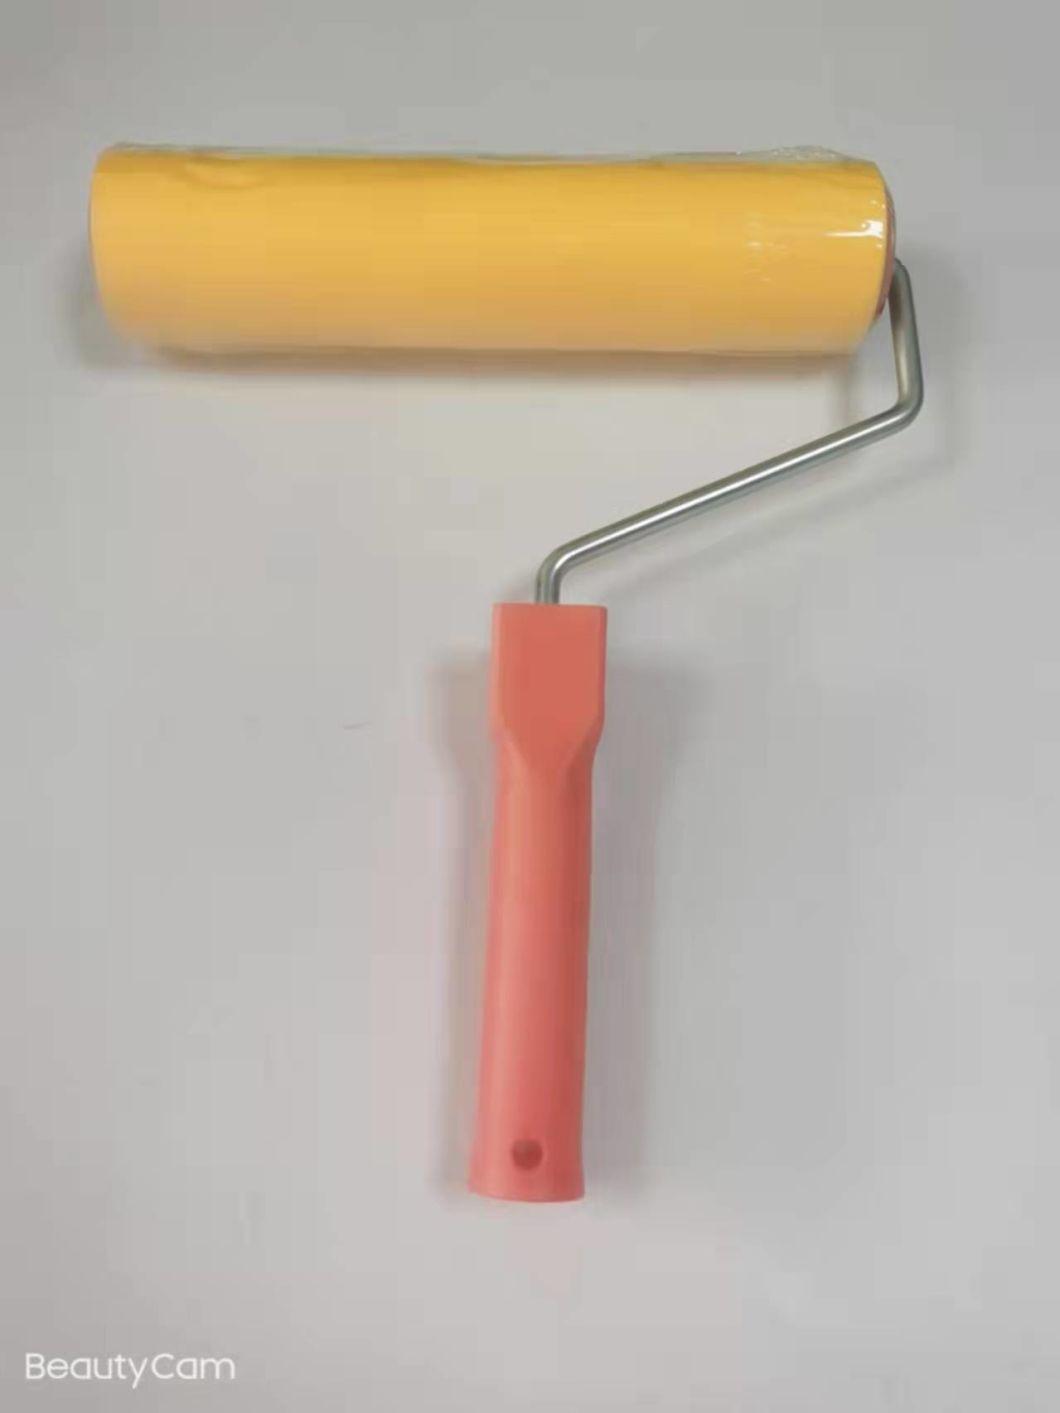 European Type Rubber Sponge Paint Rollers Brush Refills